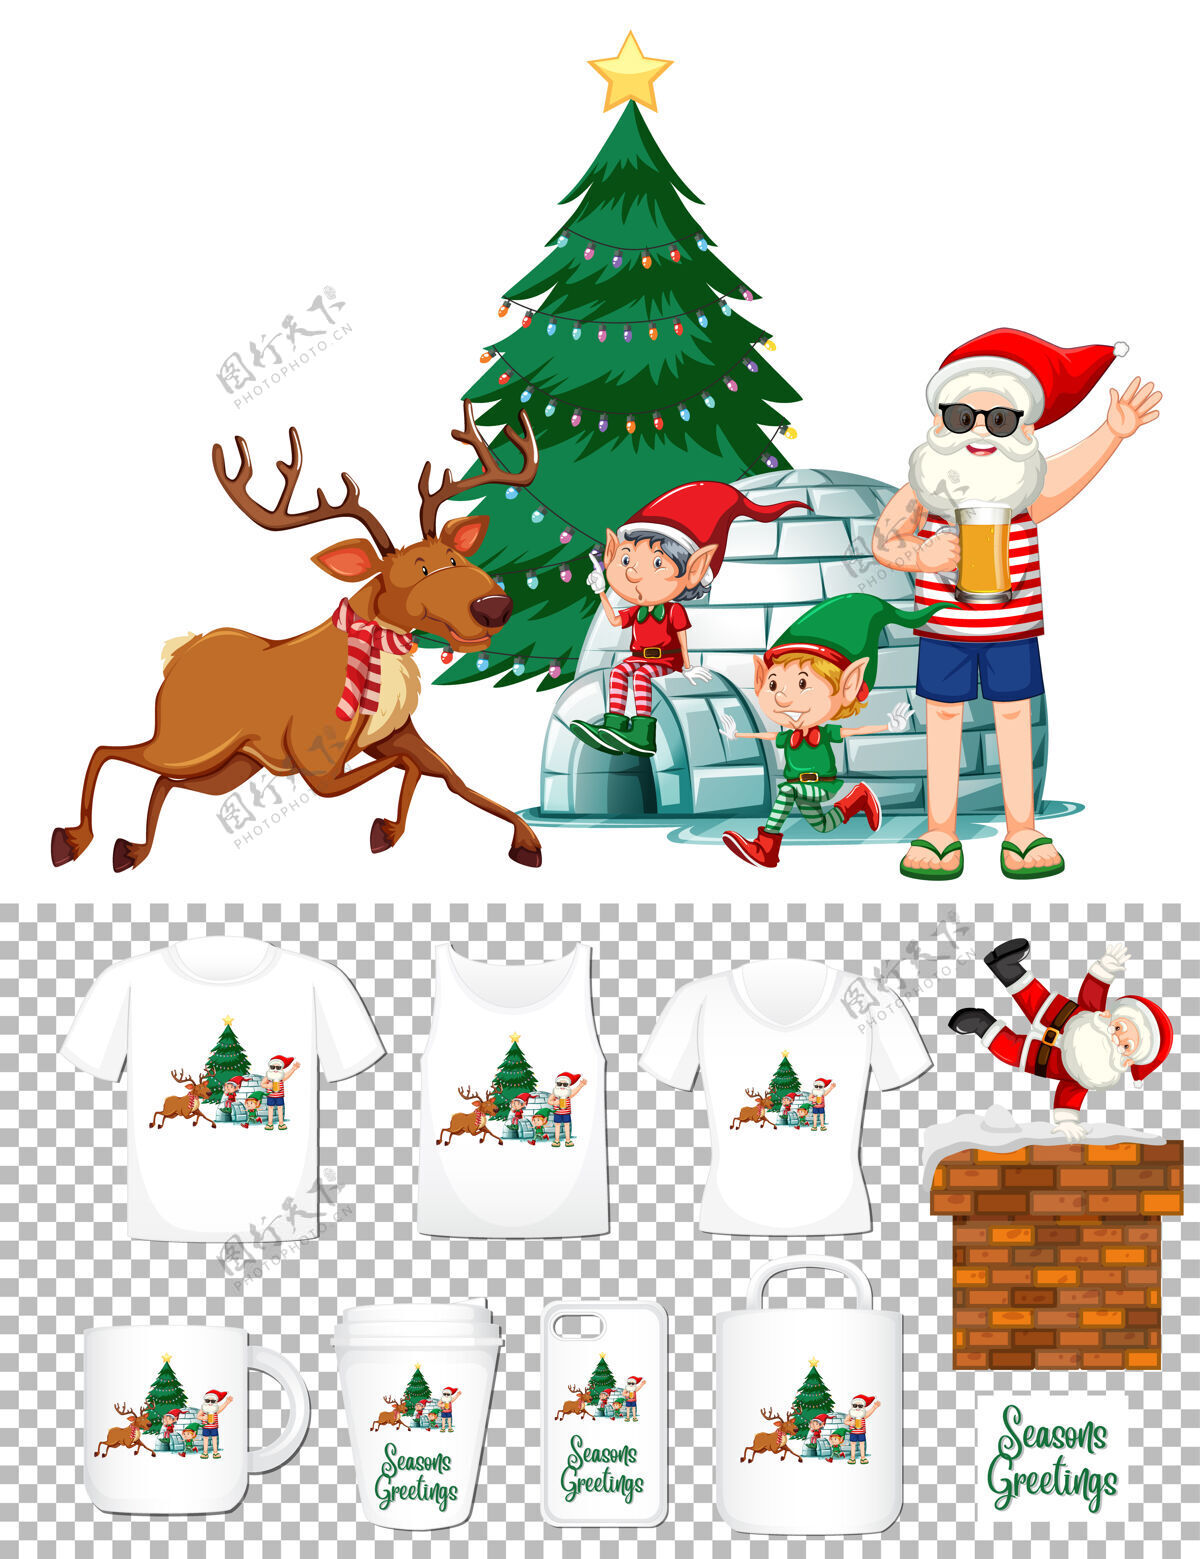 天气圣诞老人在夏季服装卡通人物与一套不同的服装和配件产品的透明背景许多圣诞老人人物